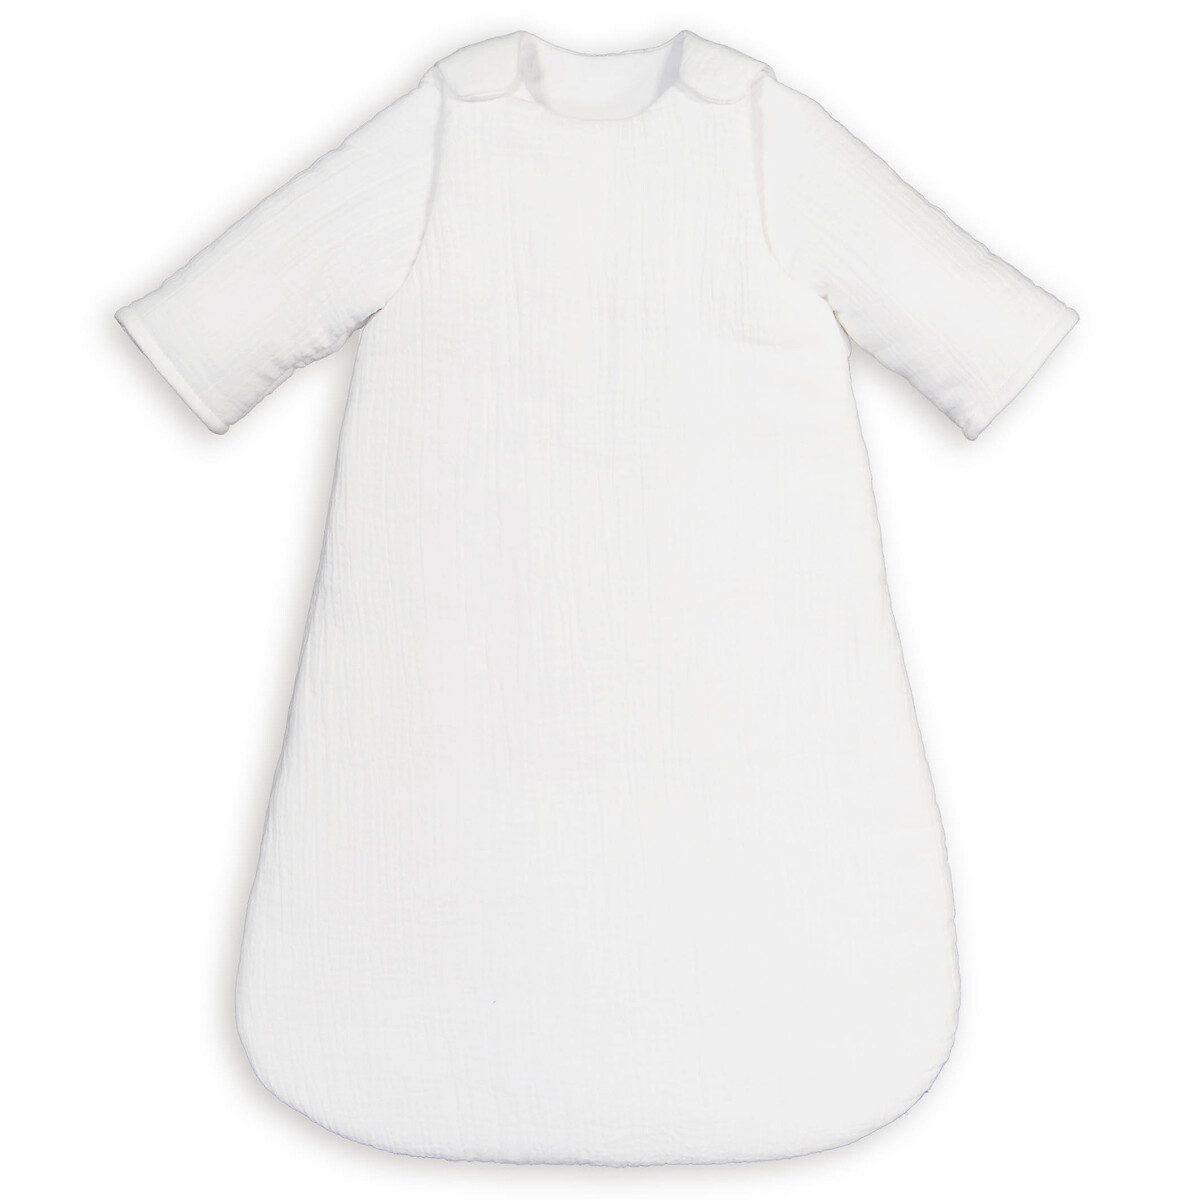 Конверт для новорожденных из газовой хлопчатобумажной ткани 2 года - 86 см белый 